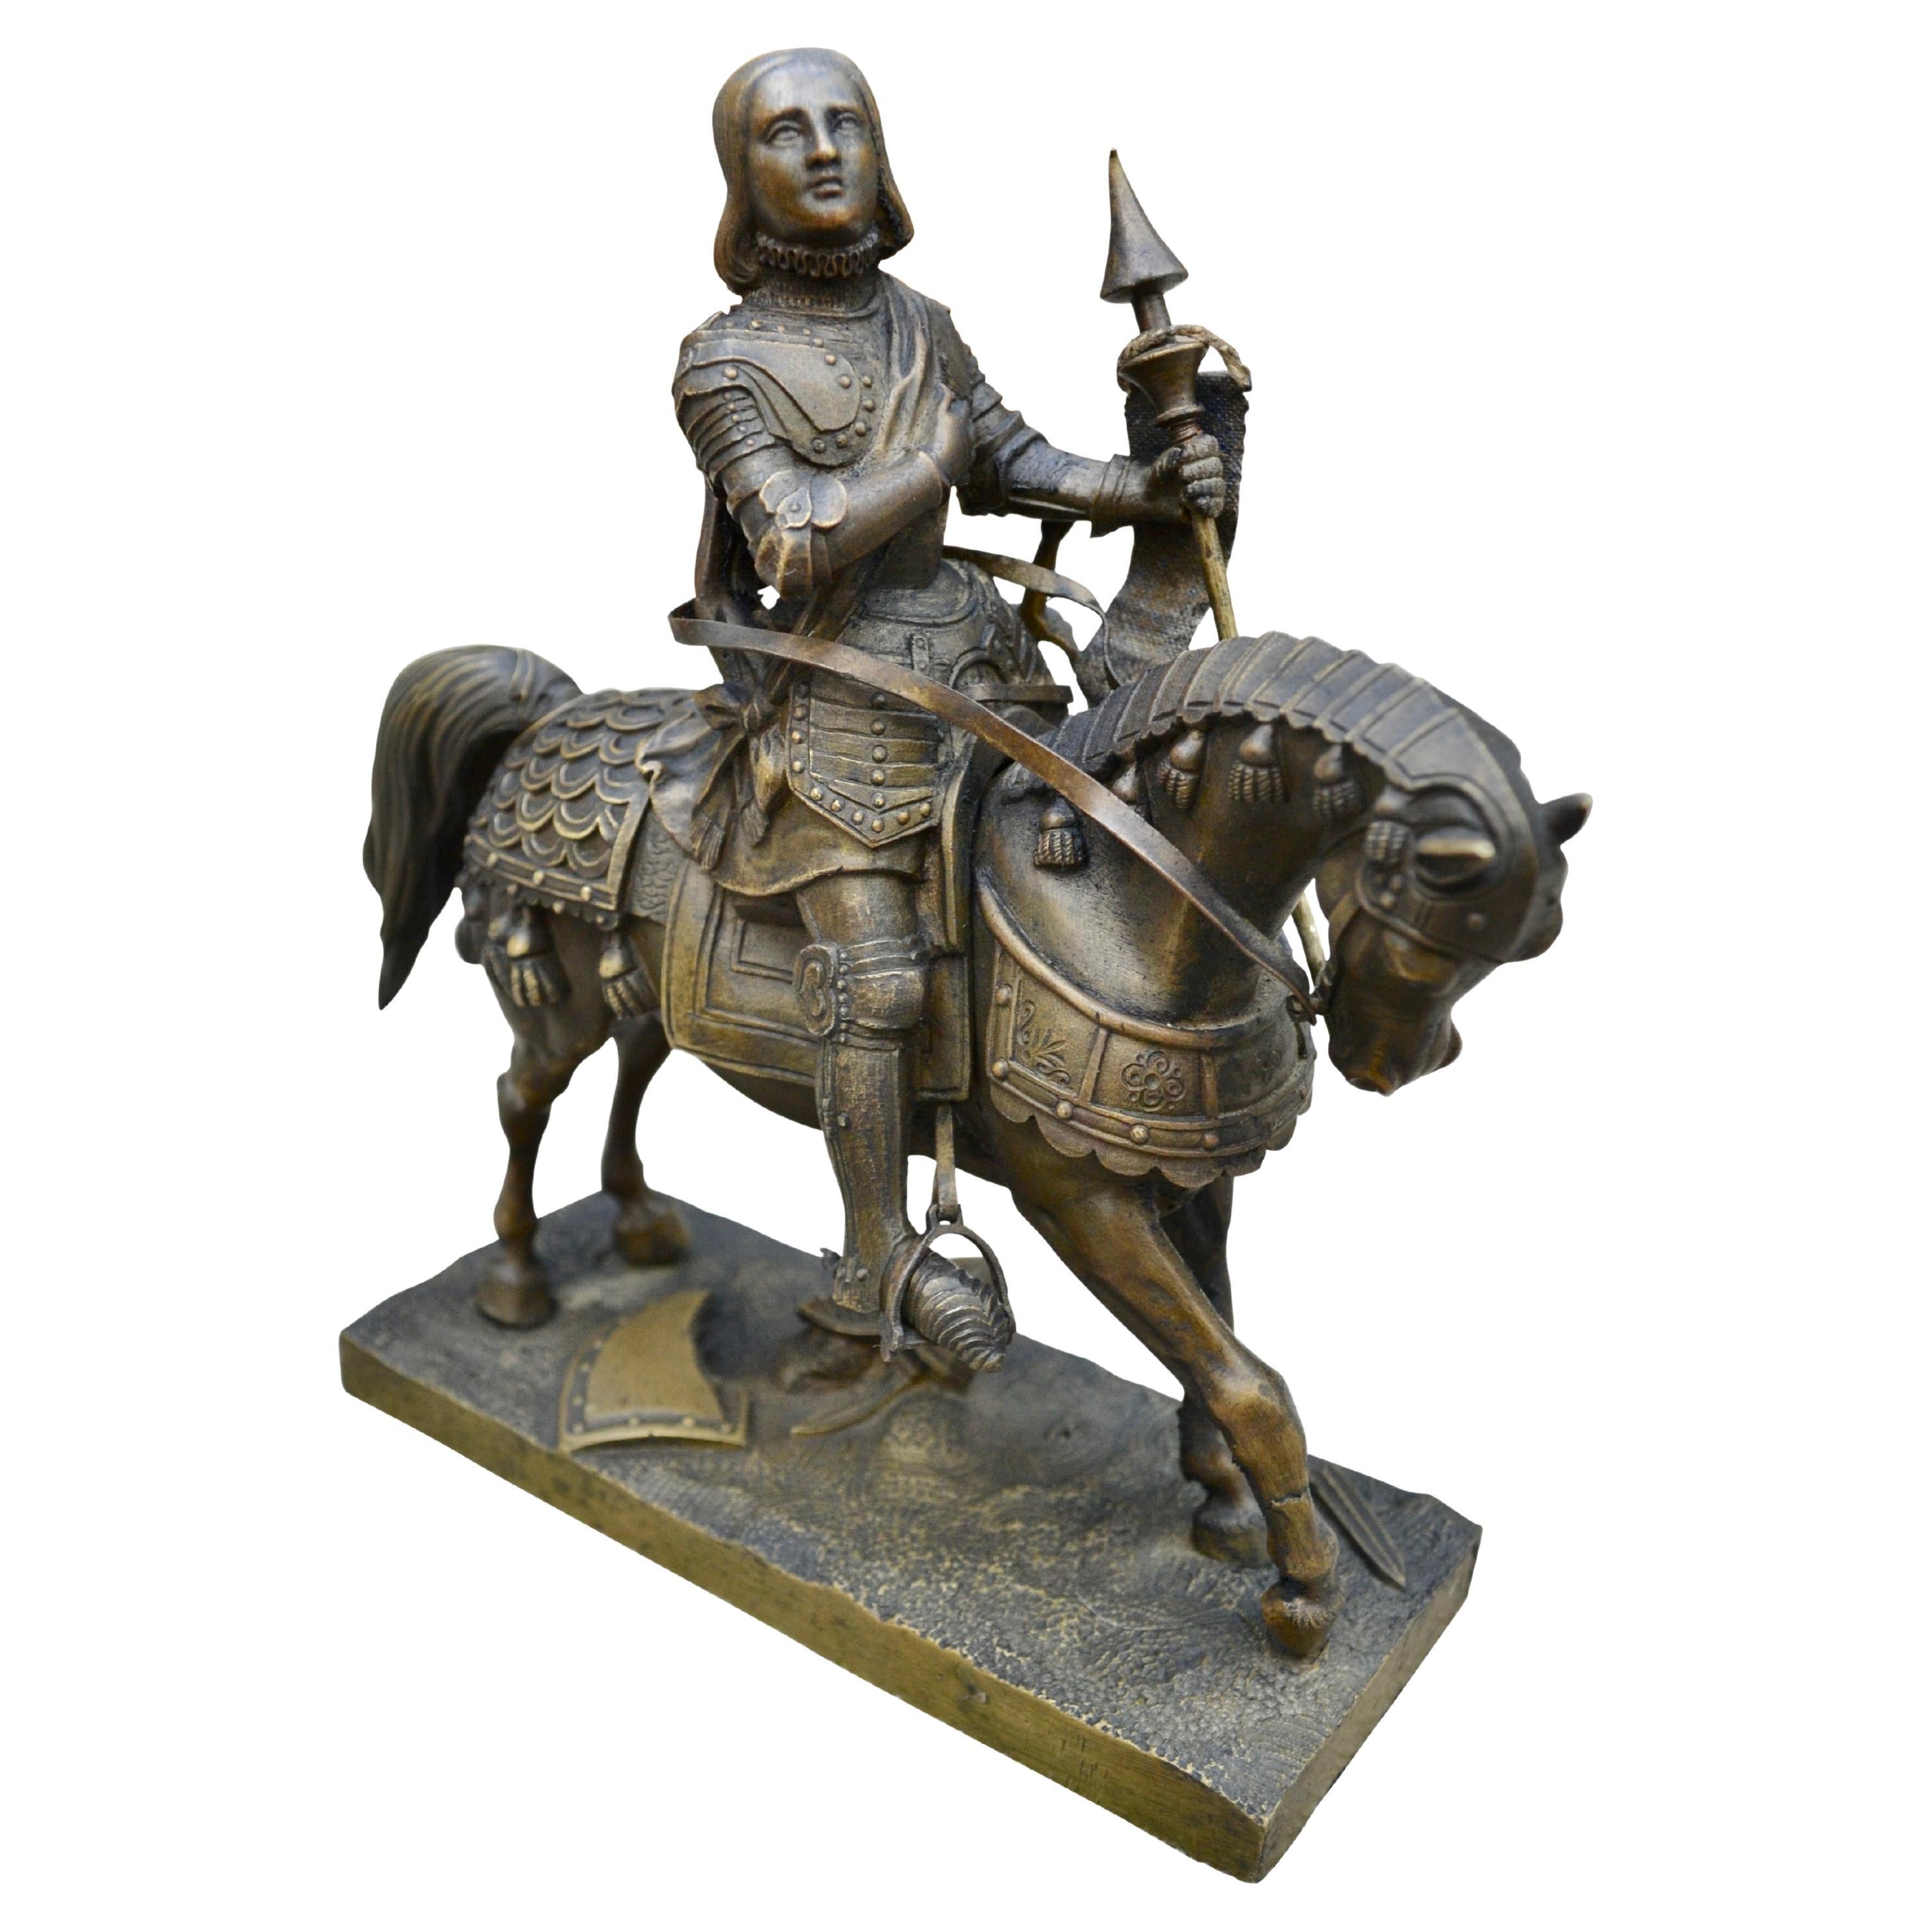 Eine kleine, aber exquisit gegossene und sehr detaillierte Bronzestatue der heiligen Jeanne d'Arc in voller Montur  die eine Hand hält eine Standarte, die andere ruht auf ihrem Herzen. Ihr Schwert ist noch in der Scheide, die an ihrer Seite hängt,